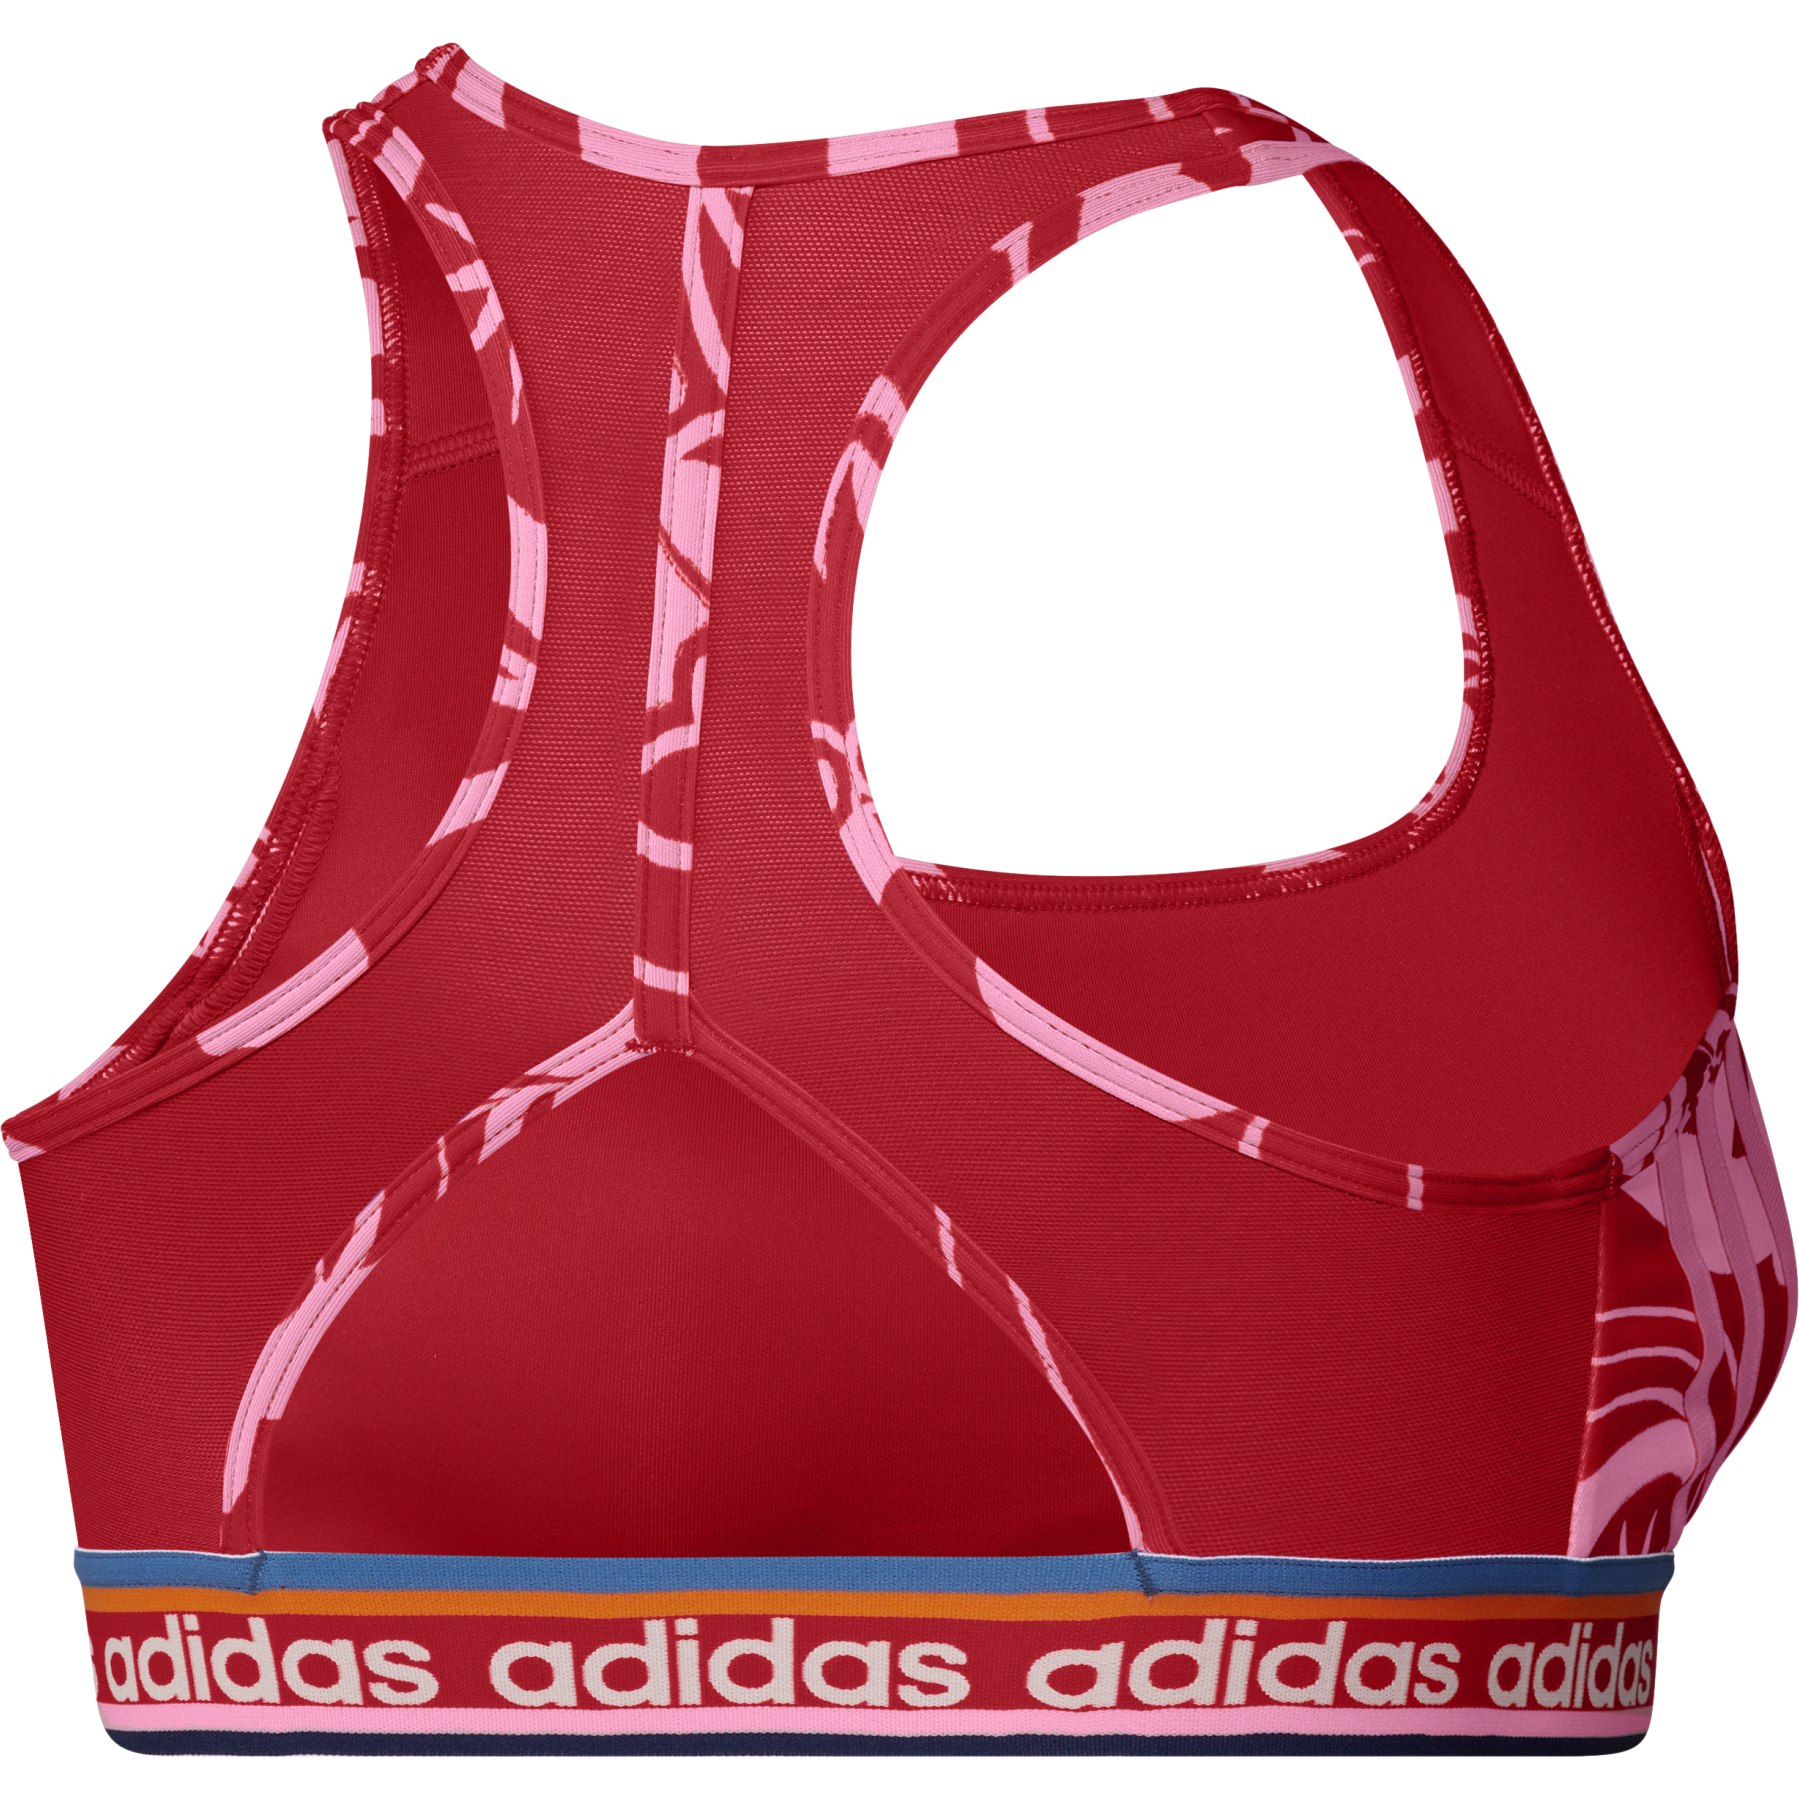 new Adidas sports bra padded top GL0617 BT2.0 PB 126936529 blue red sz XS  $50 